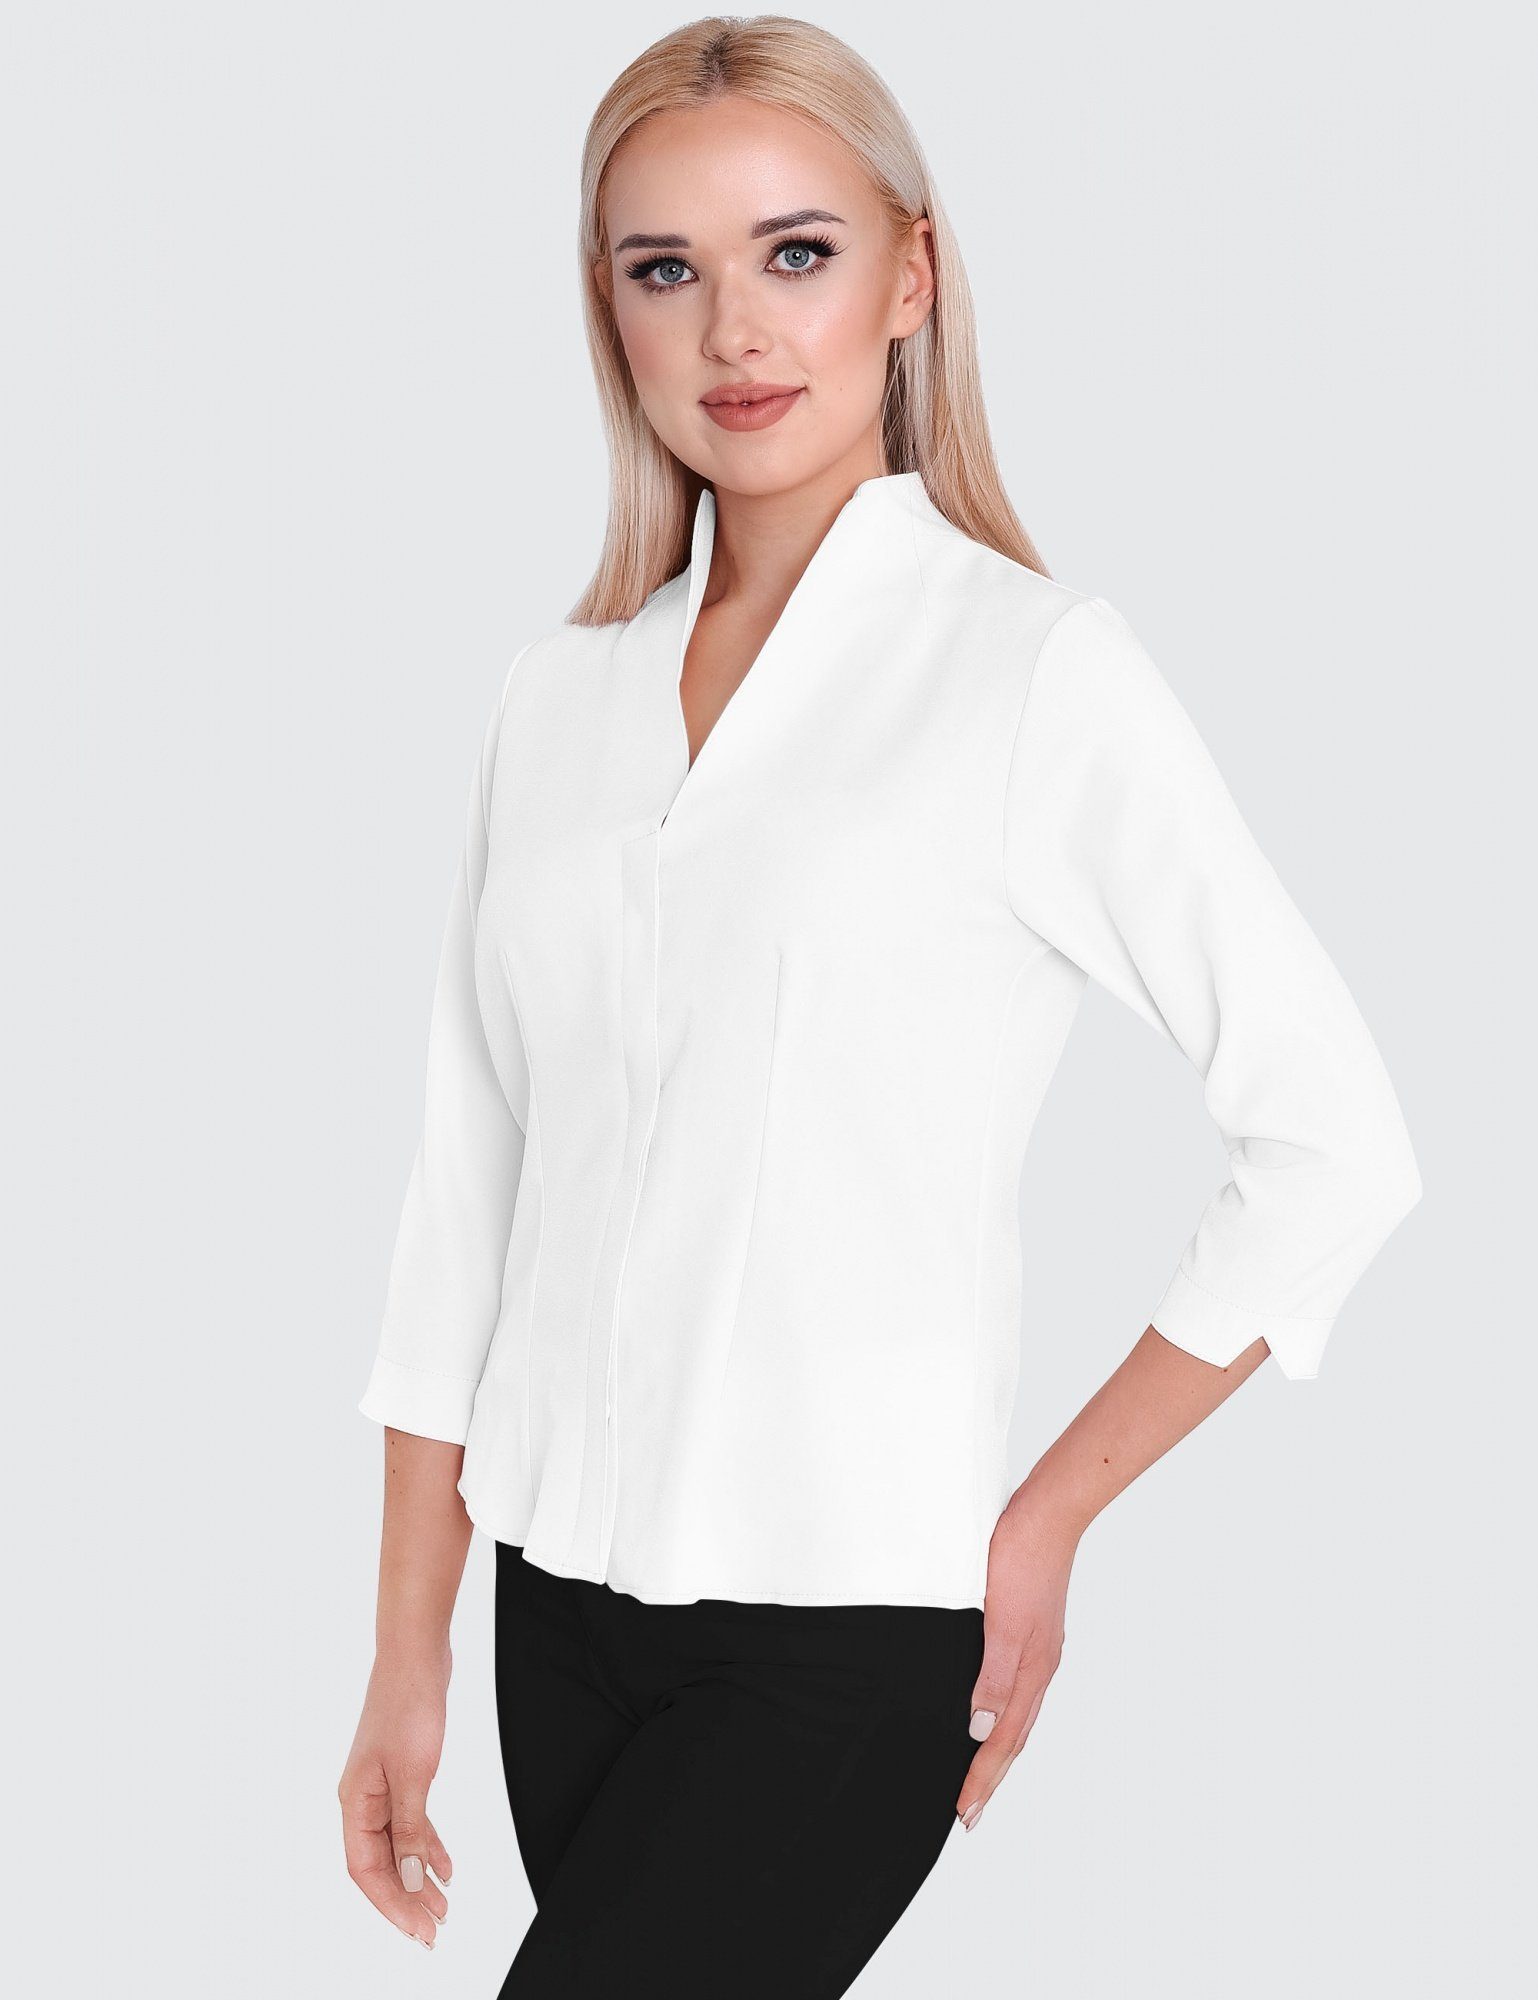 HEVENTON Klassische Bluse 3/4-Ärmel, Business-Bluse mit Kelchkragen, bügelleicht Weiß